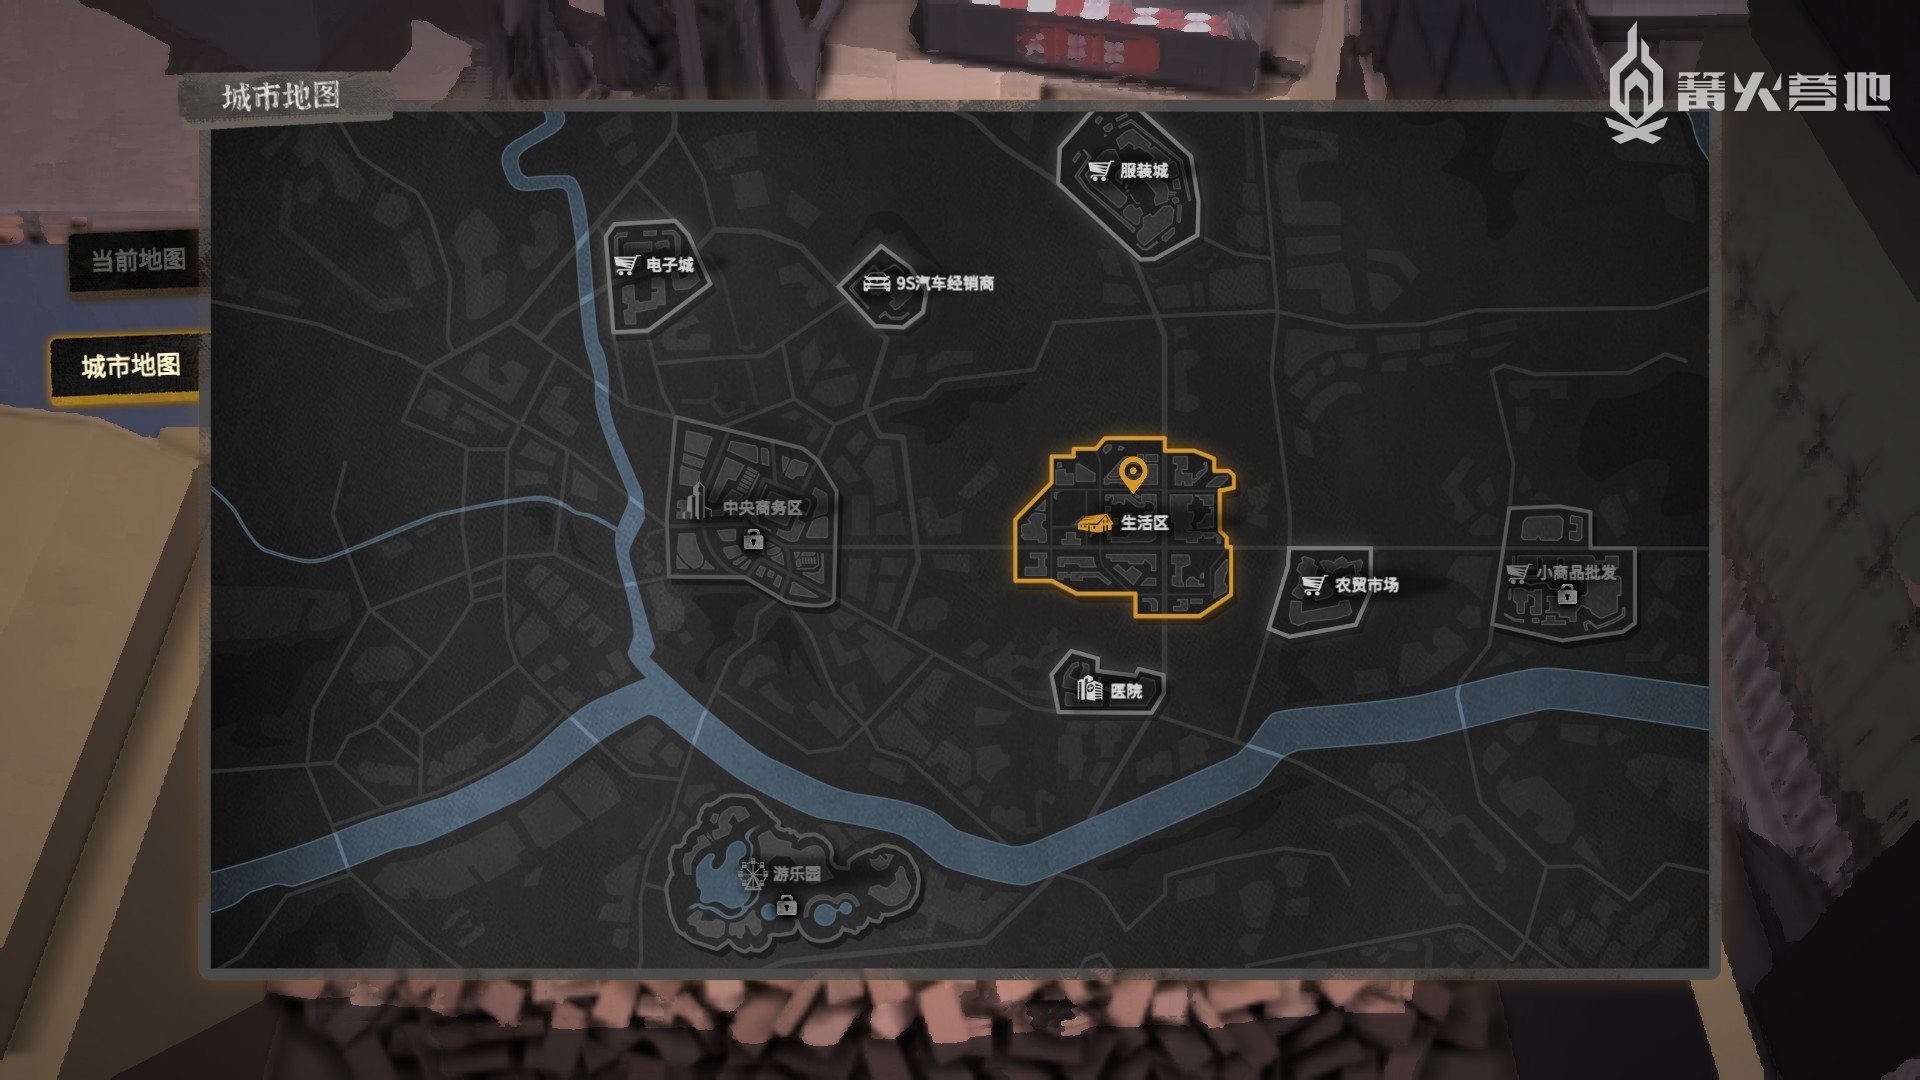 游戏大地图，玩家初期主要在生活区活动